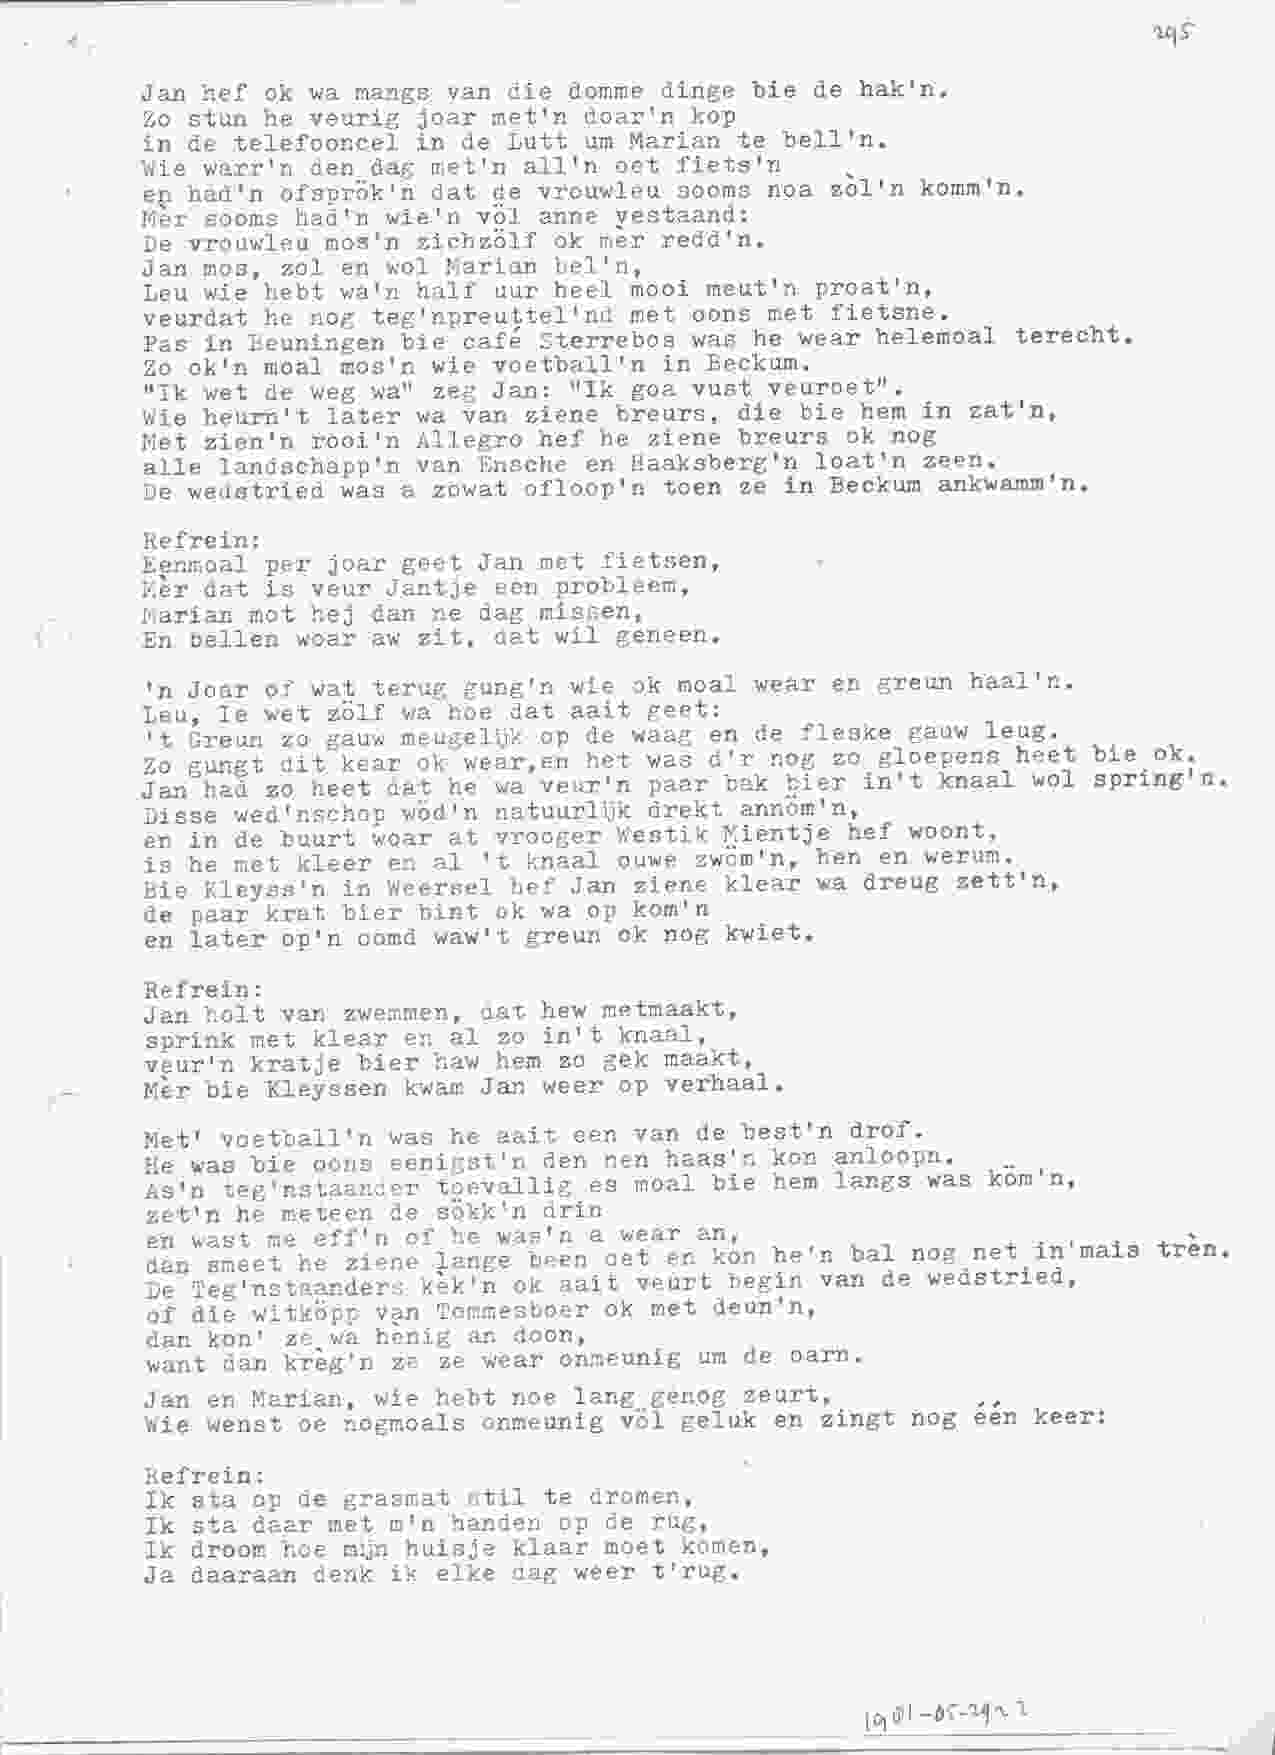 Songtekst op bruiloft van Jan en Marian op 1981-05-29